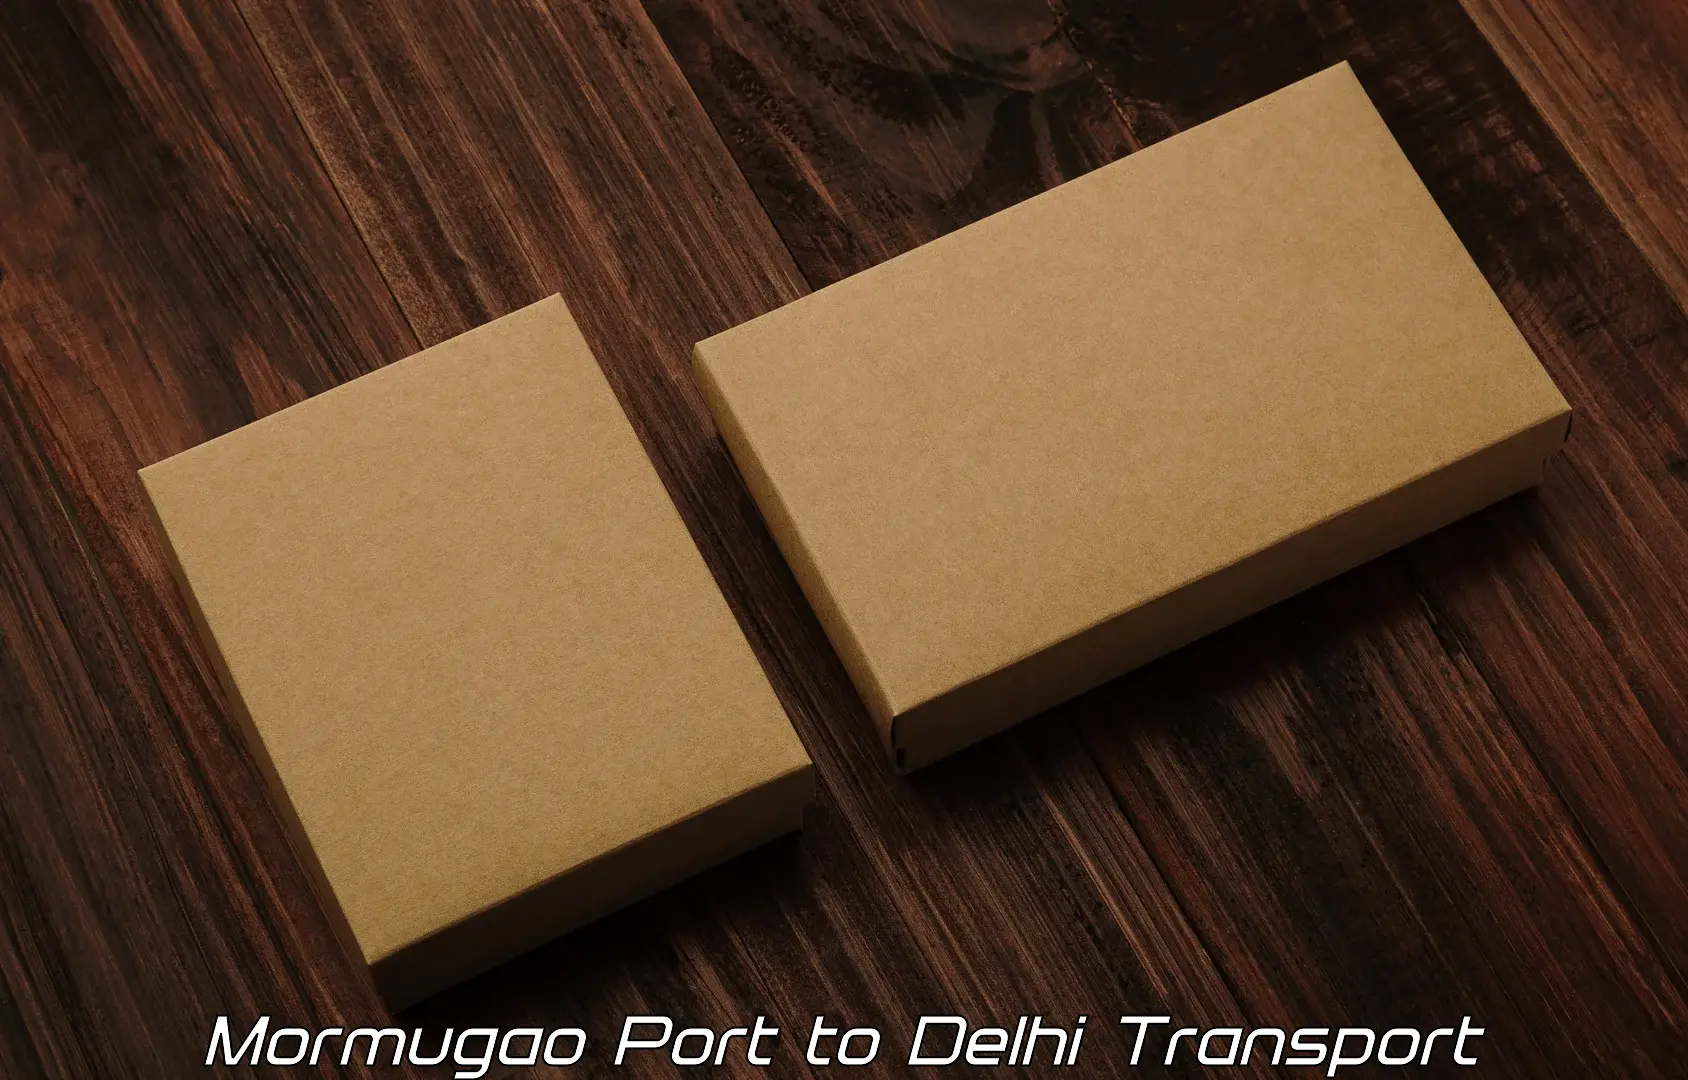 Cargo train transport services Mormugao Port to Indraprastha